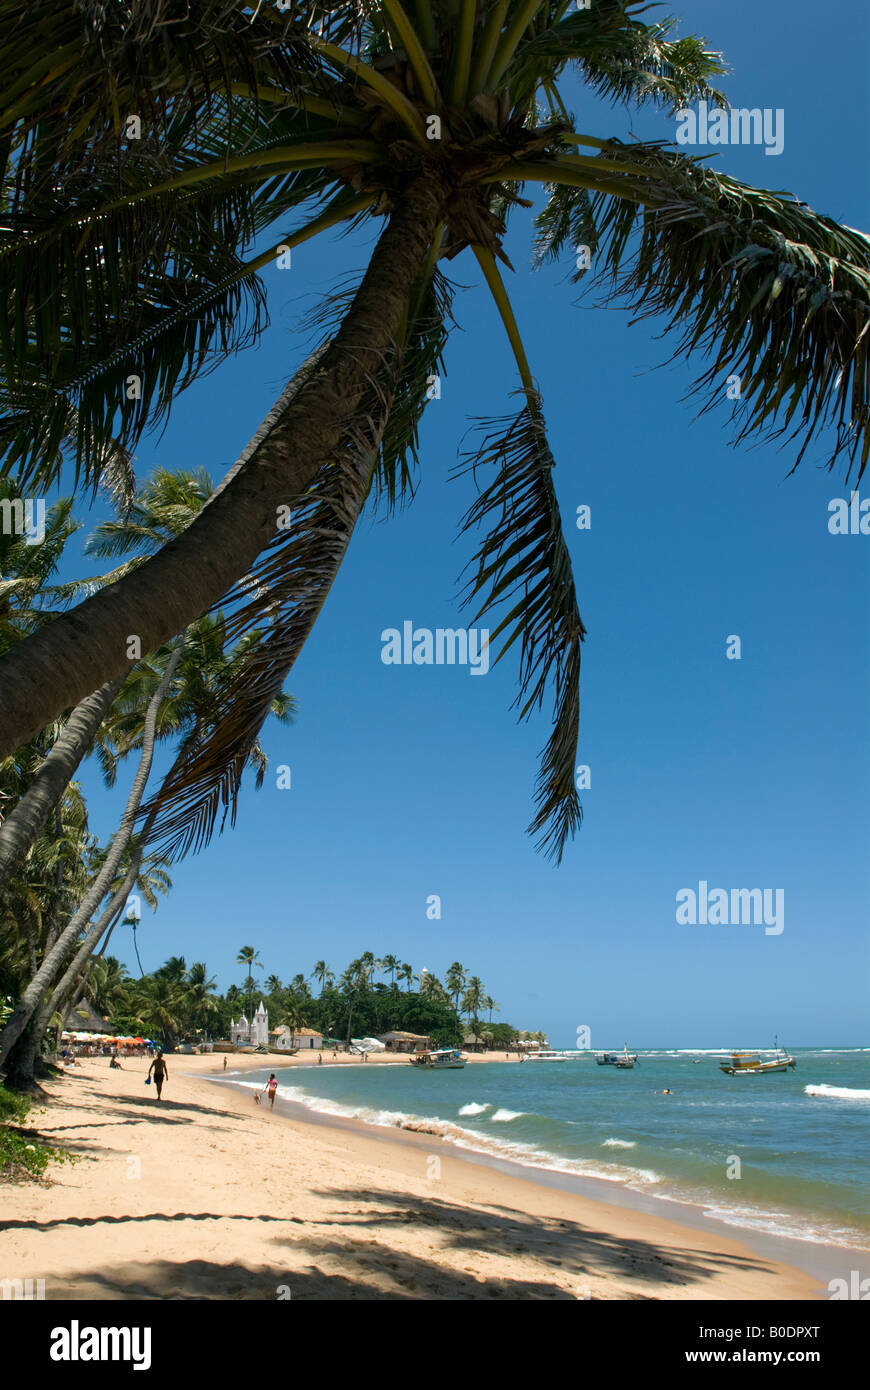 Beach at Praia do Forte,Bahia,Brazil Stock Photo